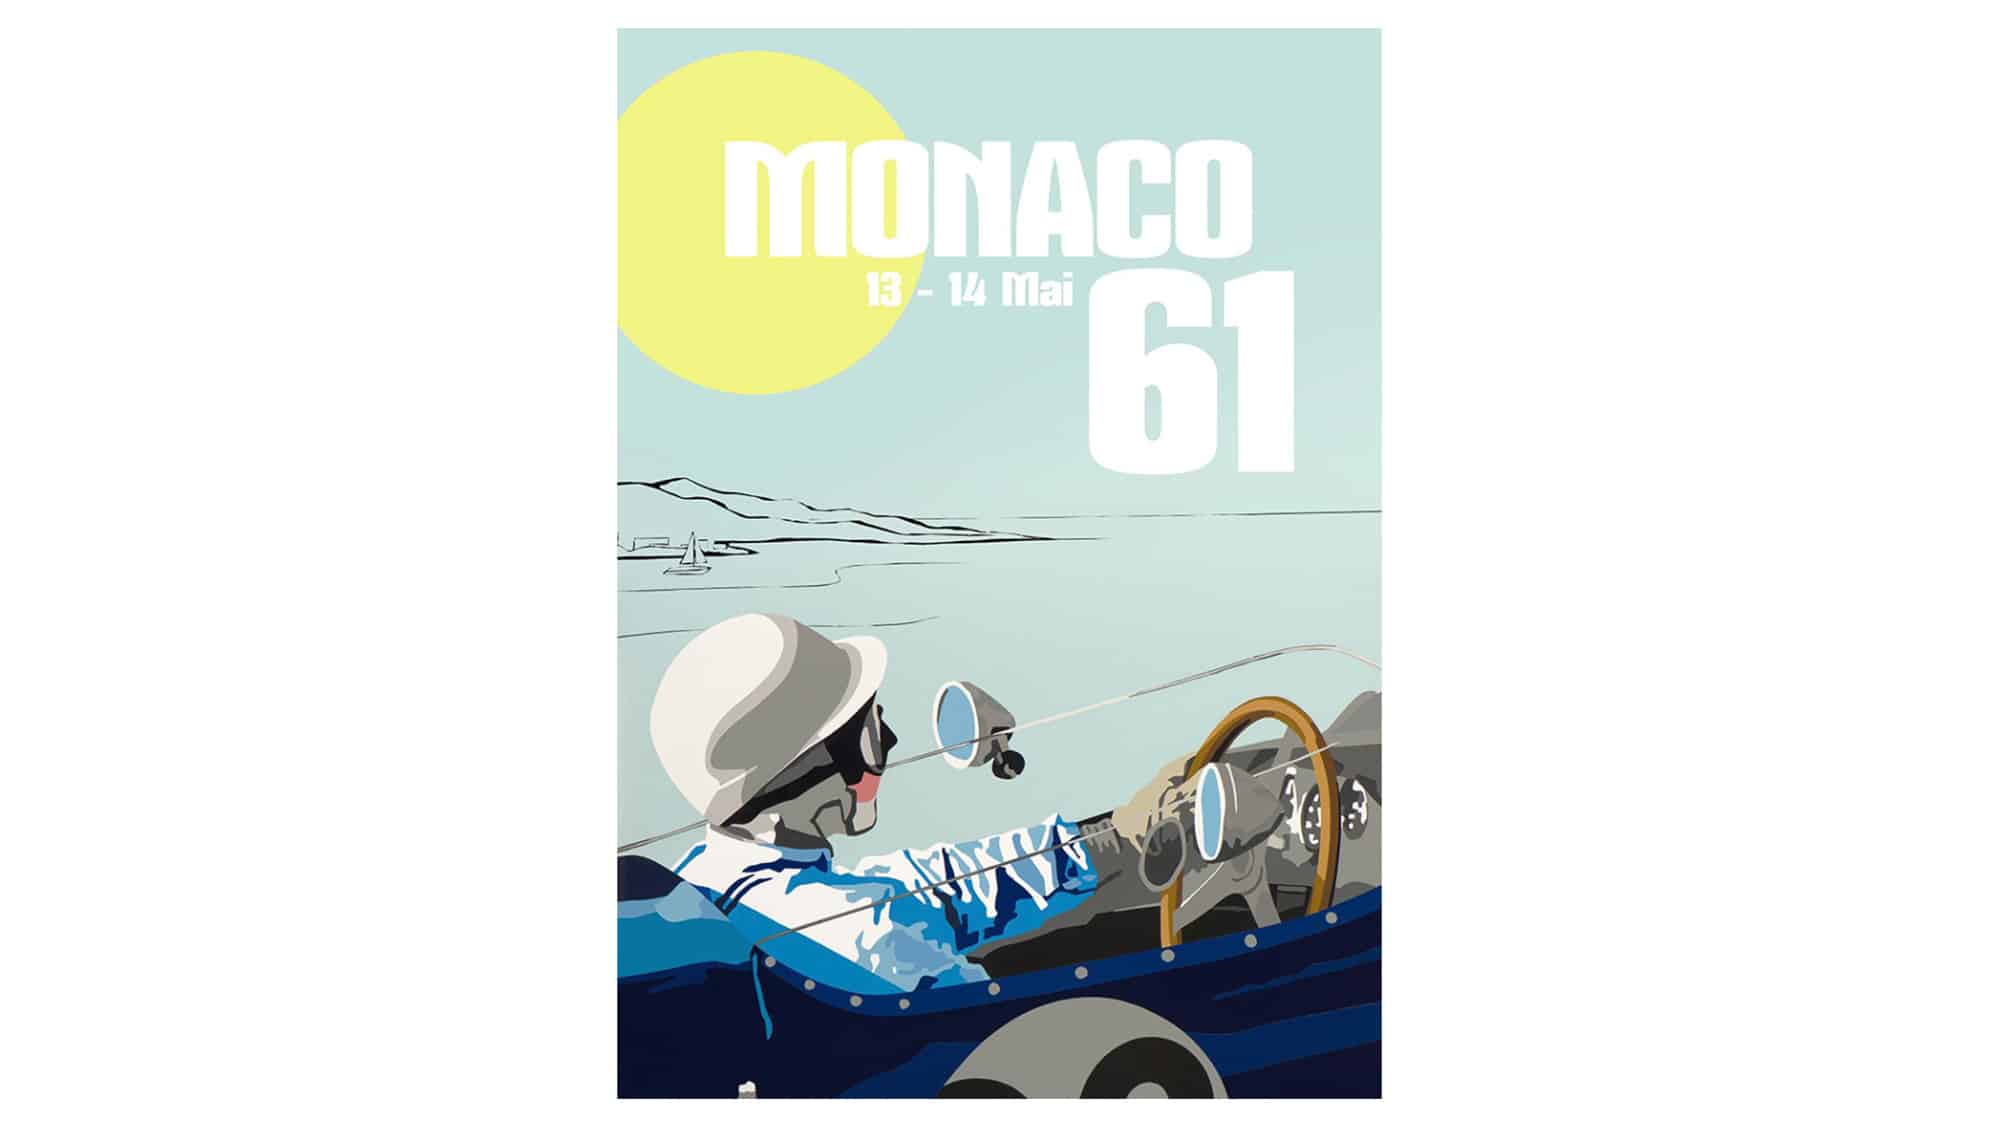 Monaco 61 poster